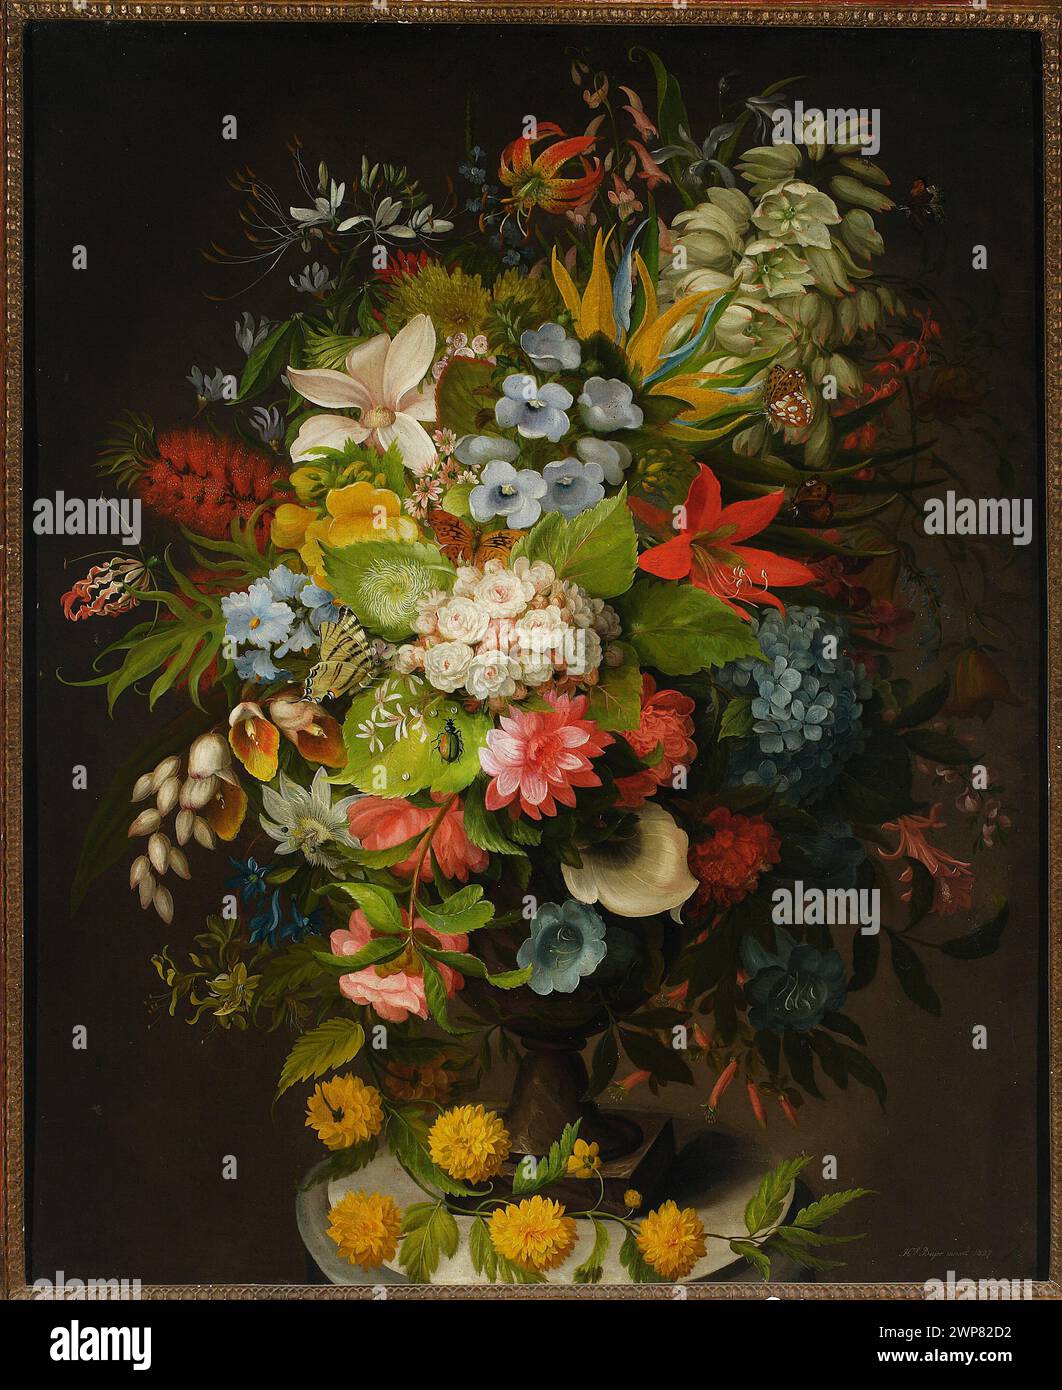 Un bouquet de fleurs dans un vase ; Beyer, Henryka (1782-1855) ; 1827 (1827-00-00-1827-00-00) ; artistes, Biedermeier (style), bouquets, fleurs dans des vases, peintres, natures mortes, fleur, achat (provenance) Banque D'Images